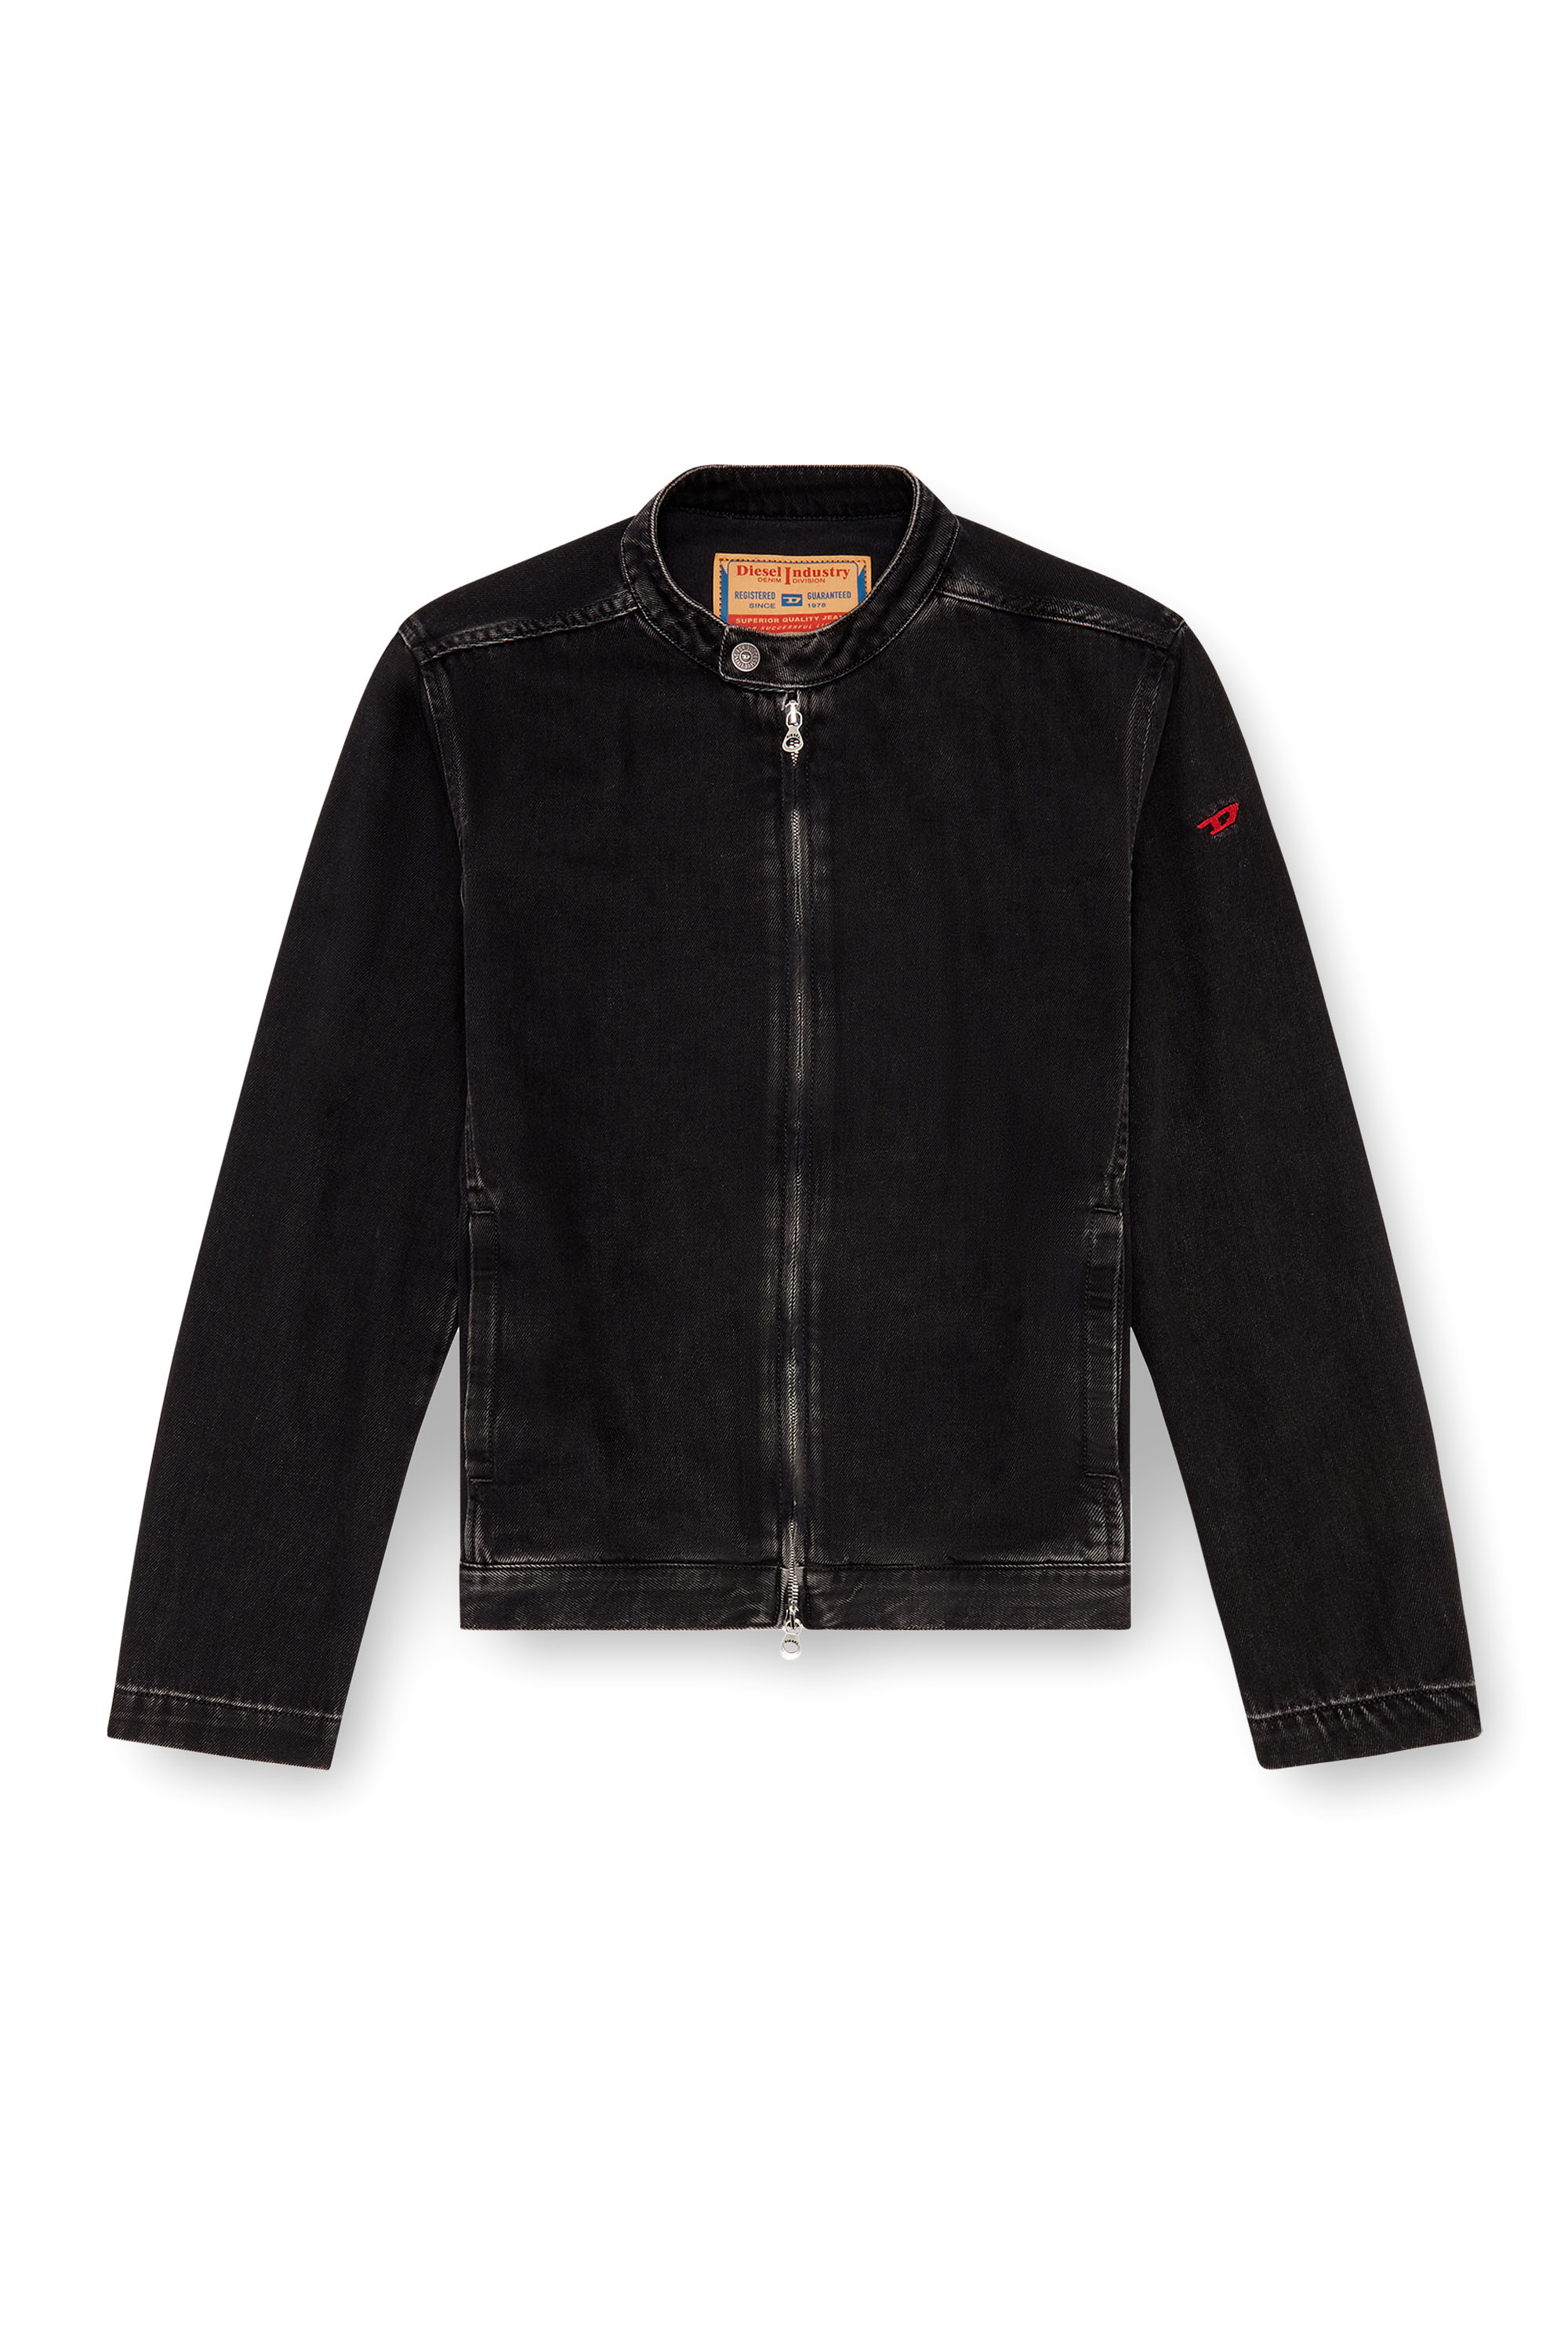 Diesel - D-GLORY, Male Moto jacket in clean-wash denim in Black - Image 6